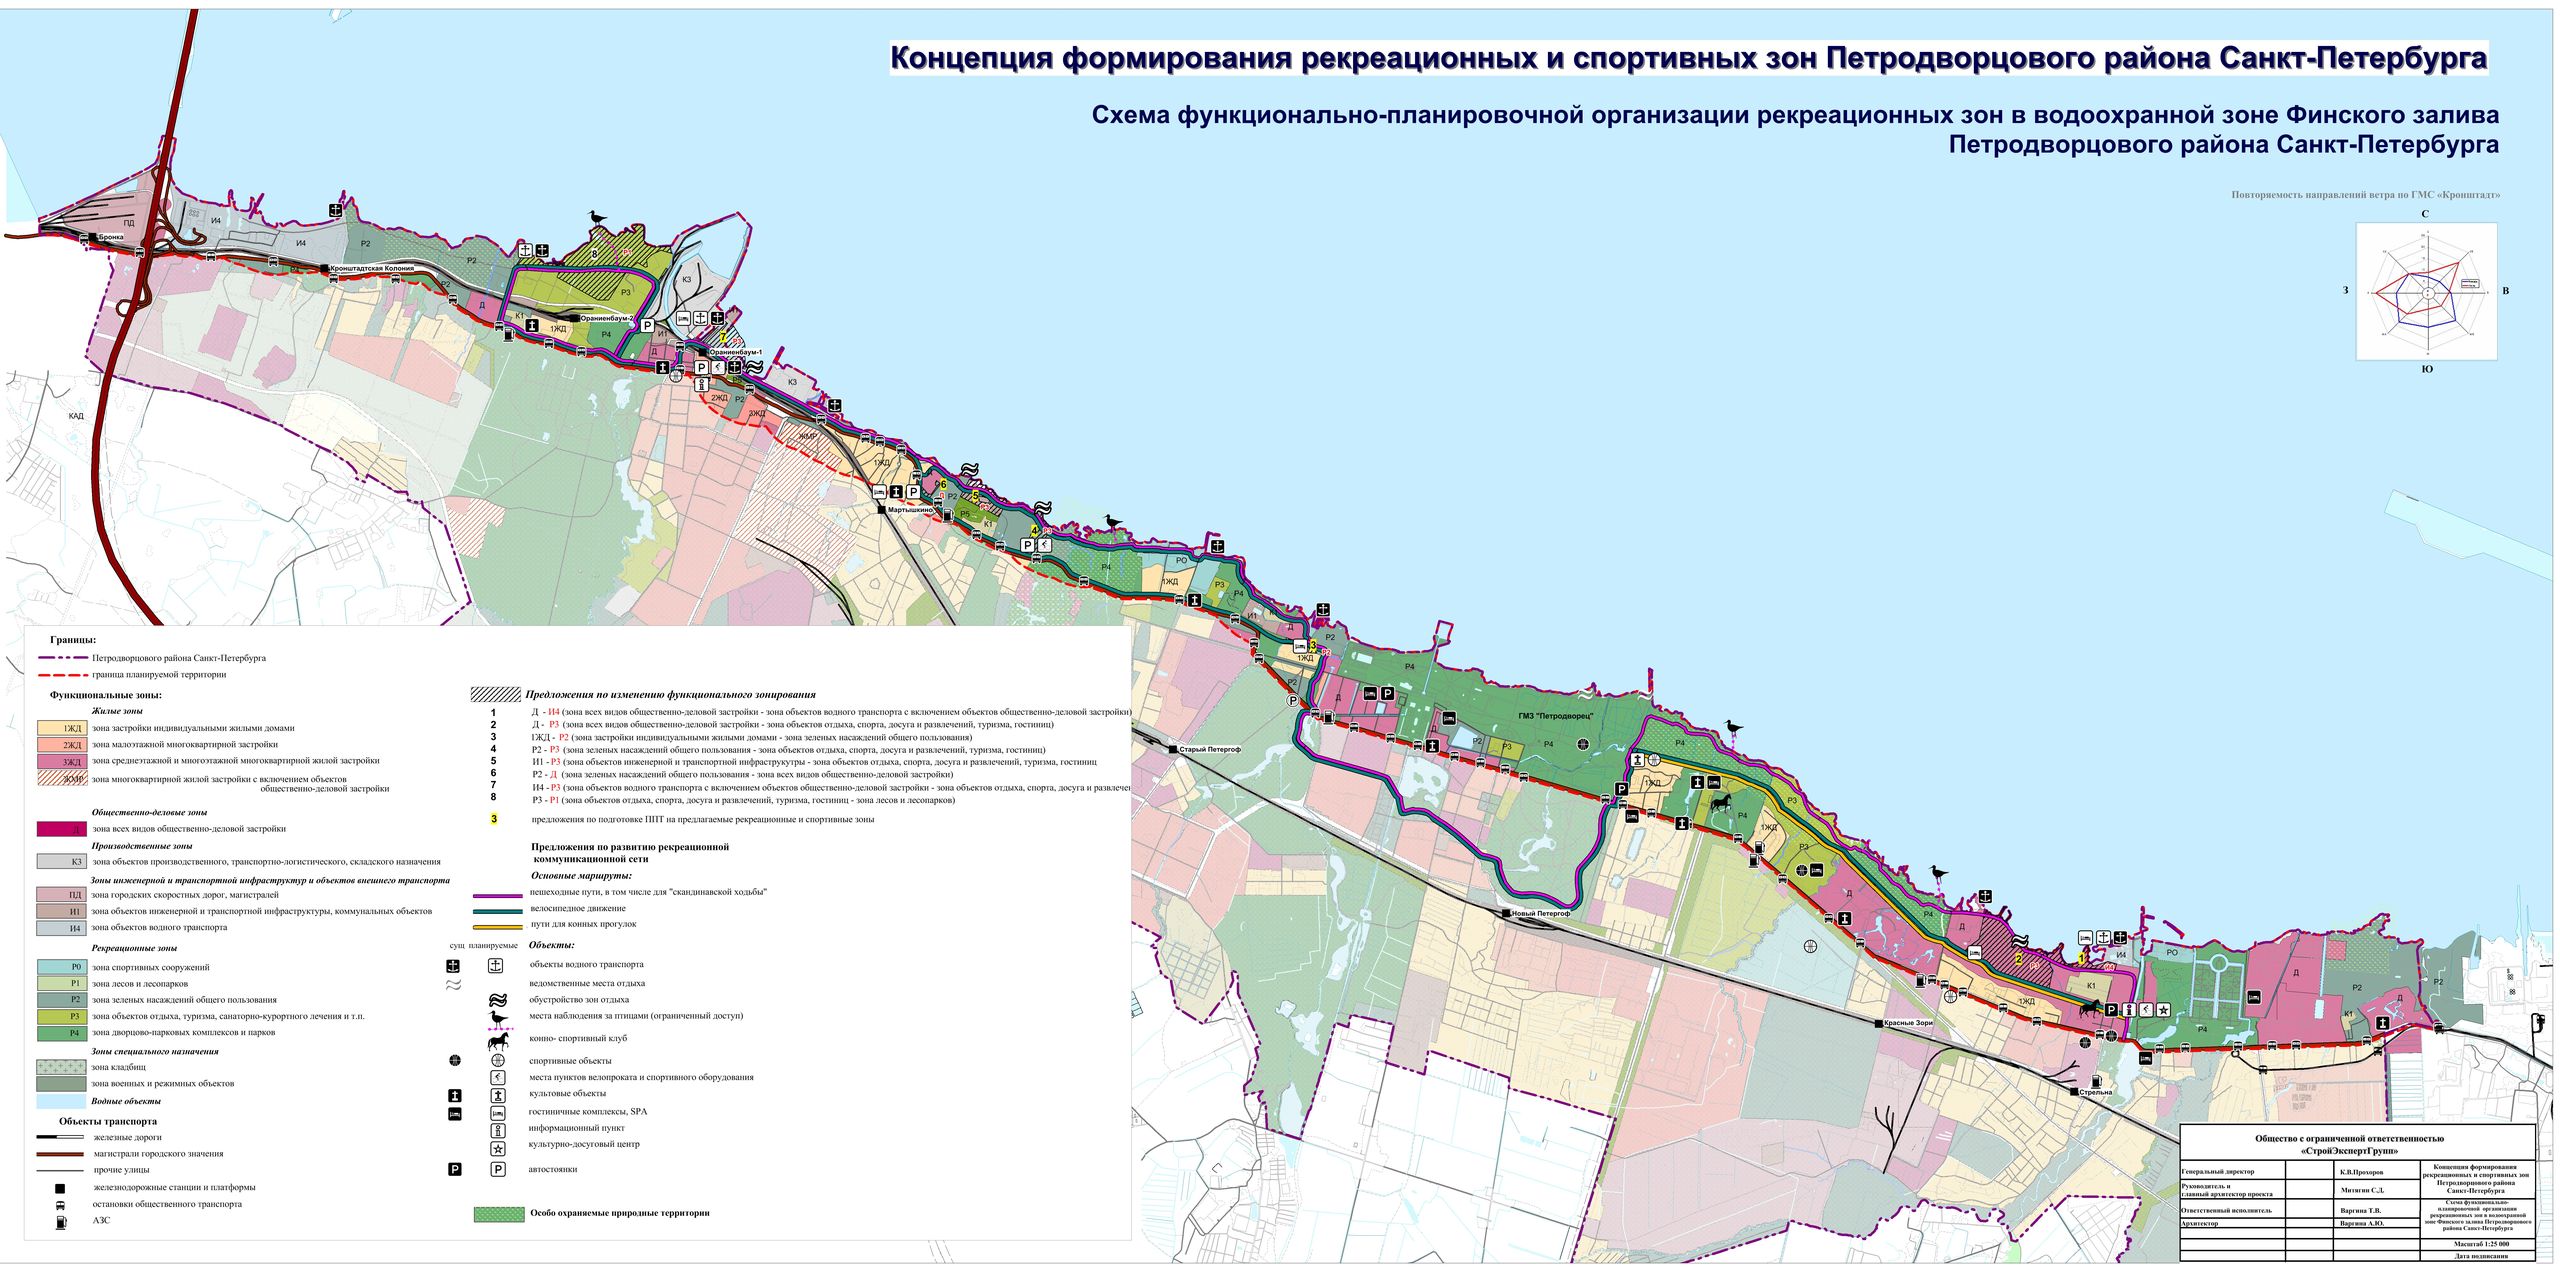 Концепция формирования рекреационных и спортивных зон Петродворцового района Санкт-Петербурга